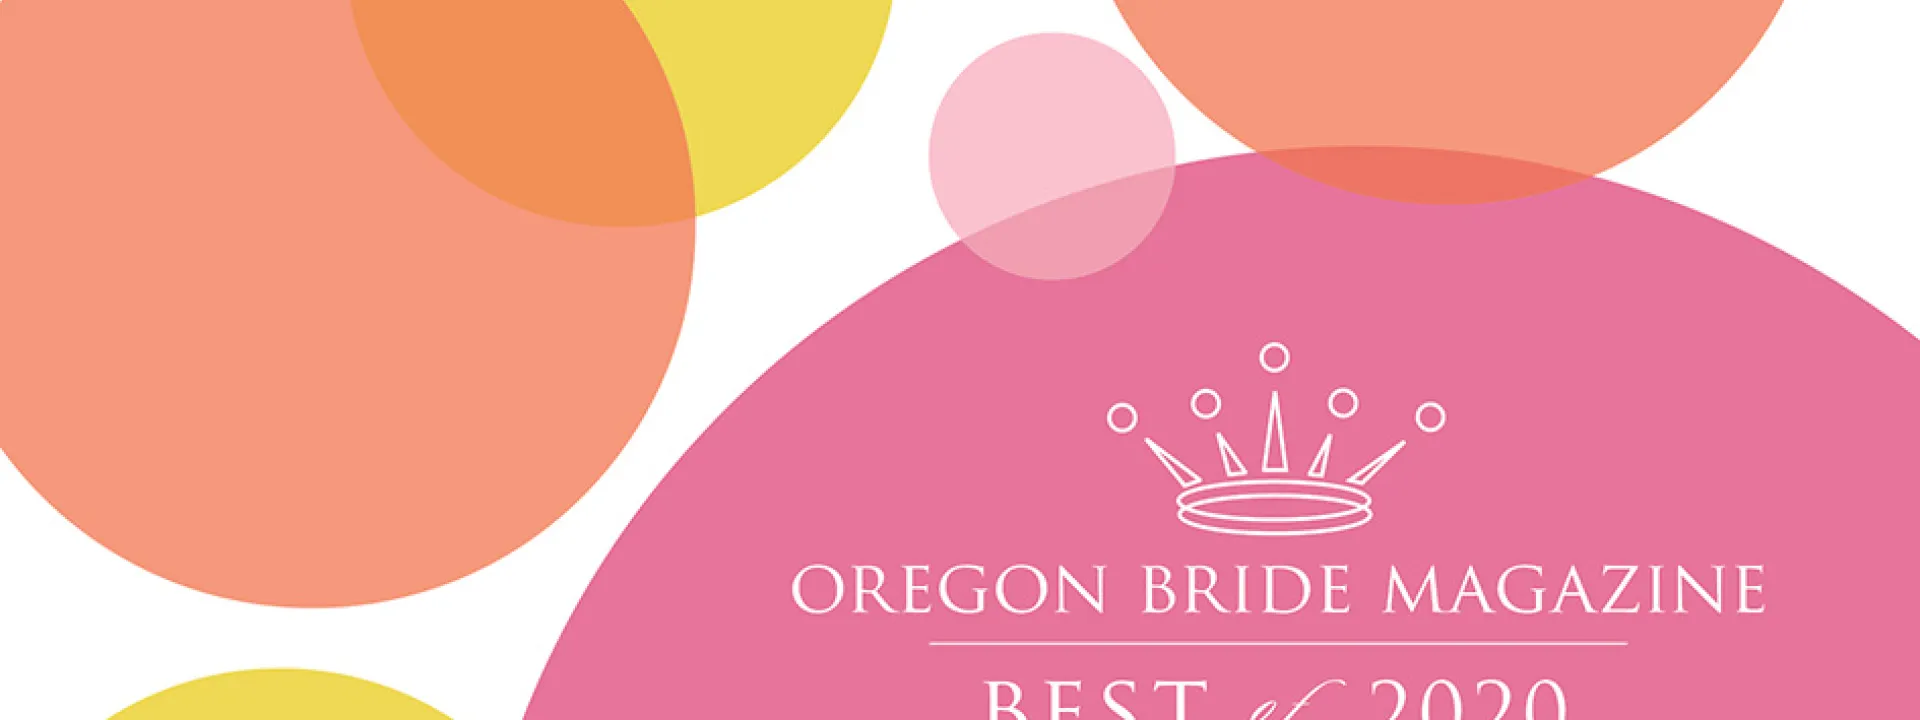 Oregon Bride Best Of 2020